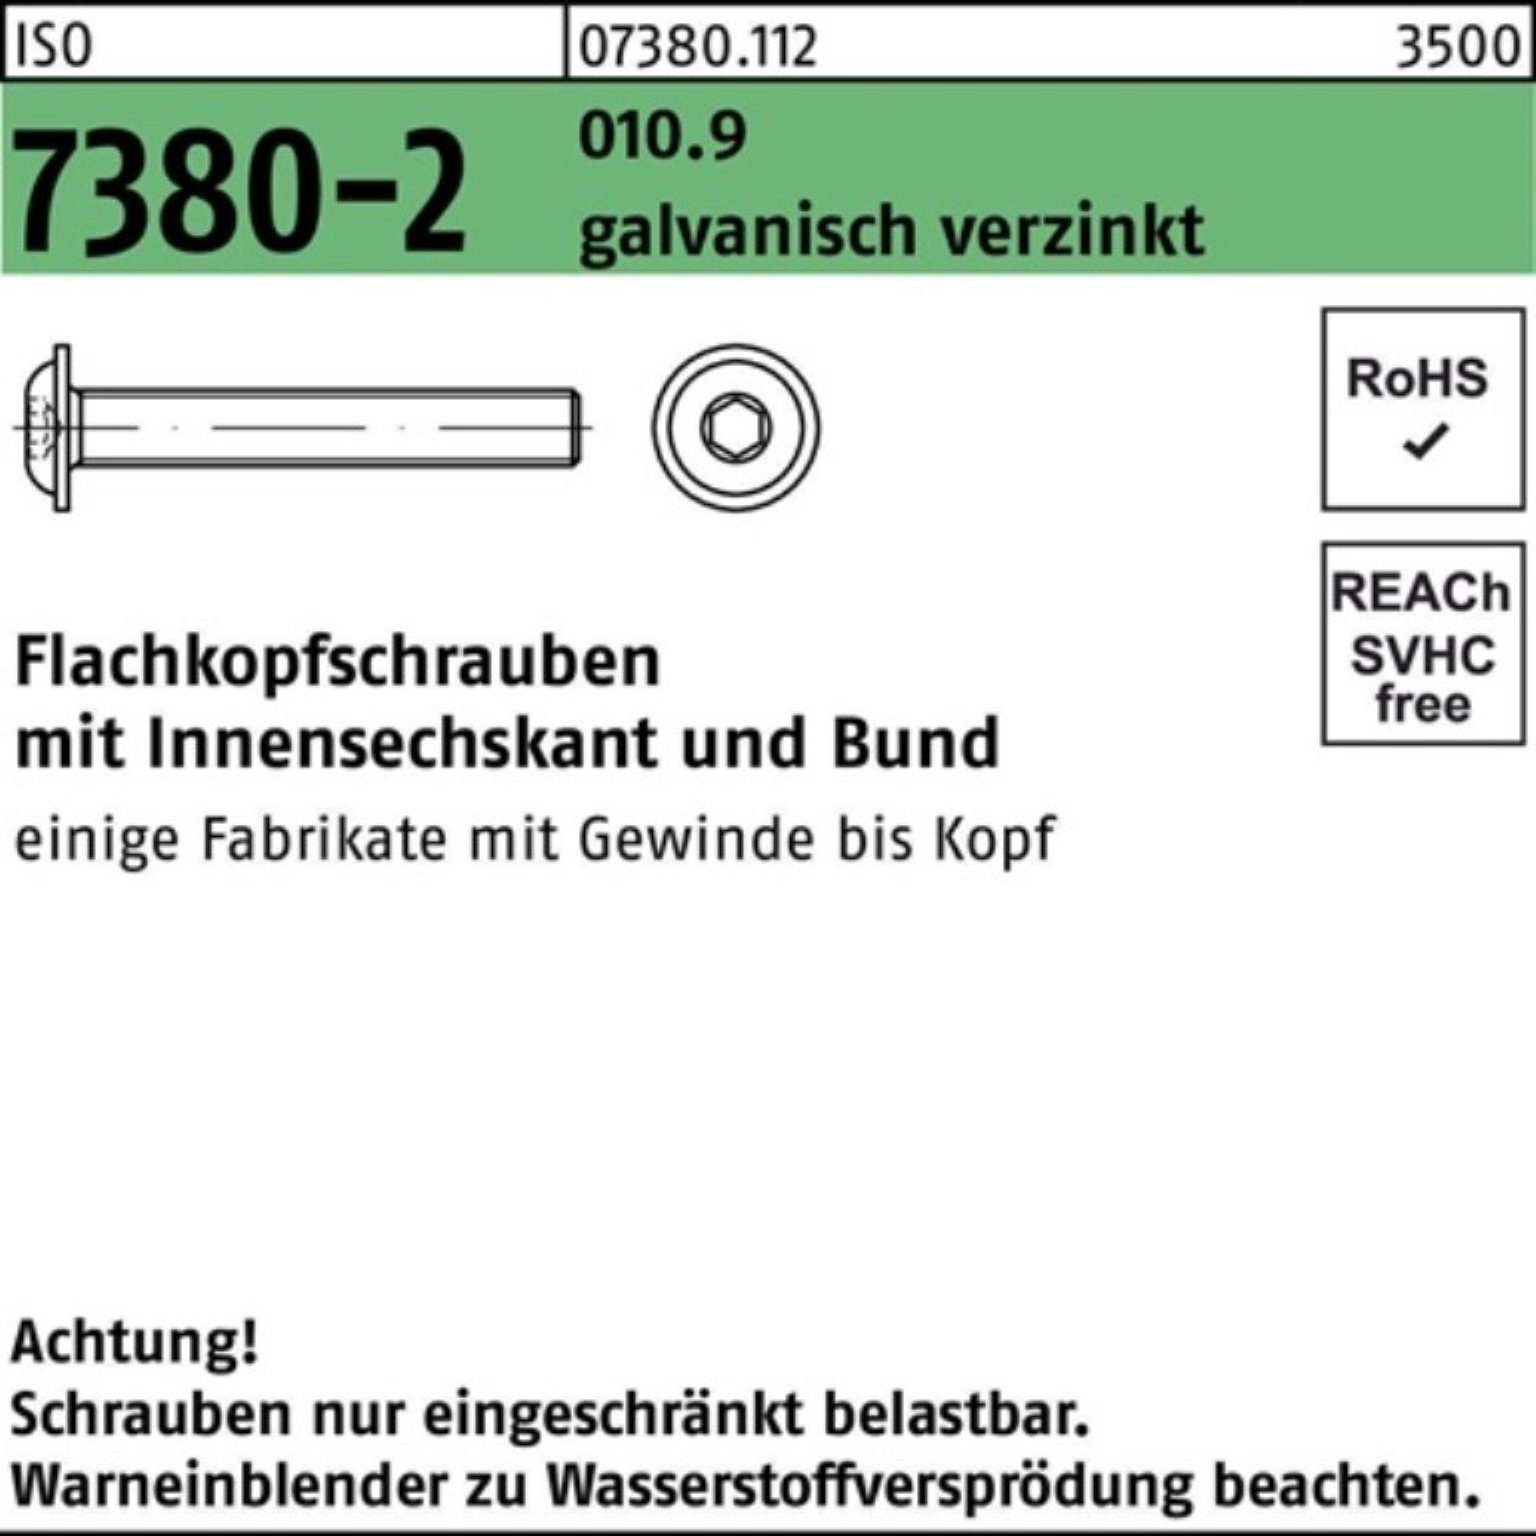 gal ISO Flachkopfschraube Reyher Pack 7380-2 200er Schraube M8x50 Bund/Innen-6kt 010.9